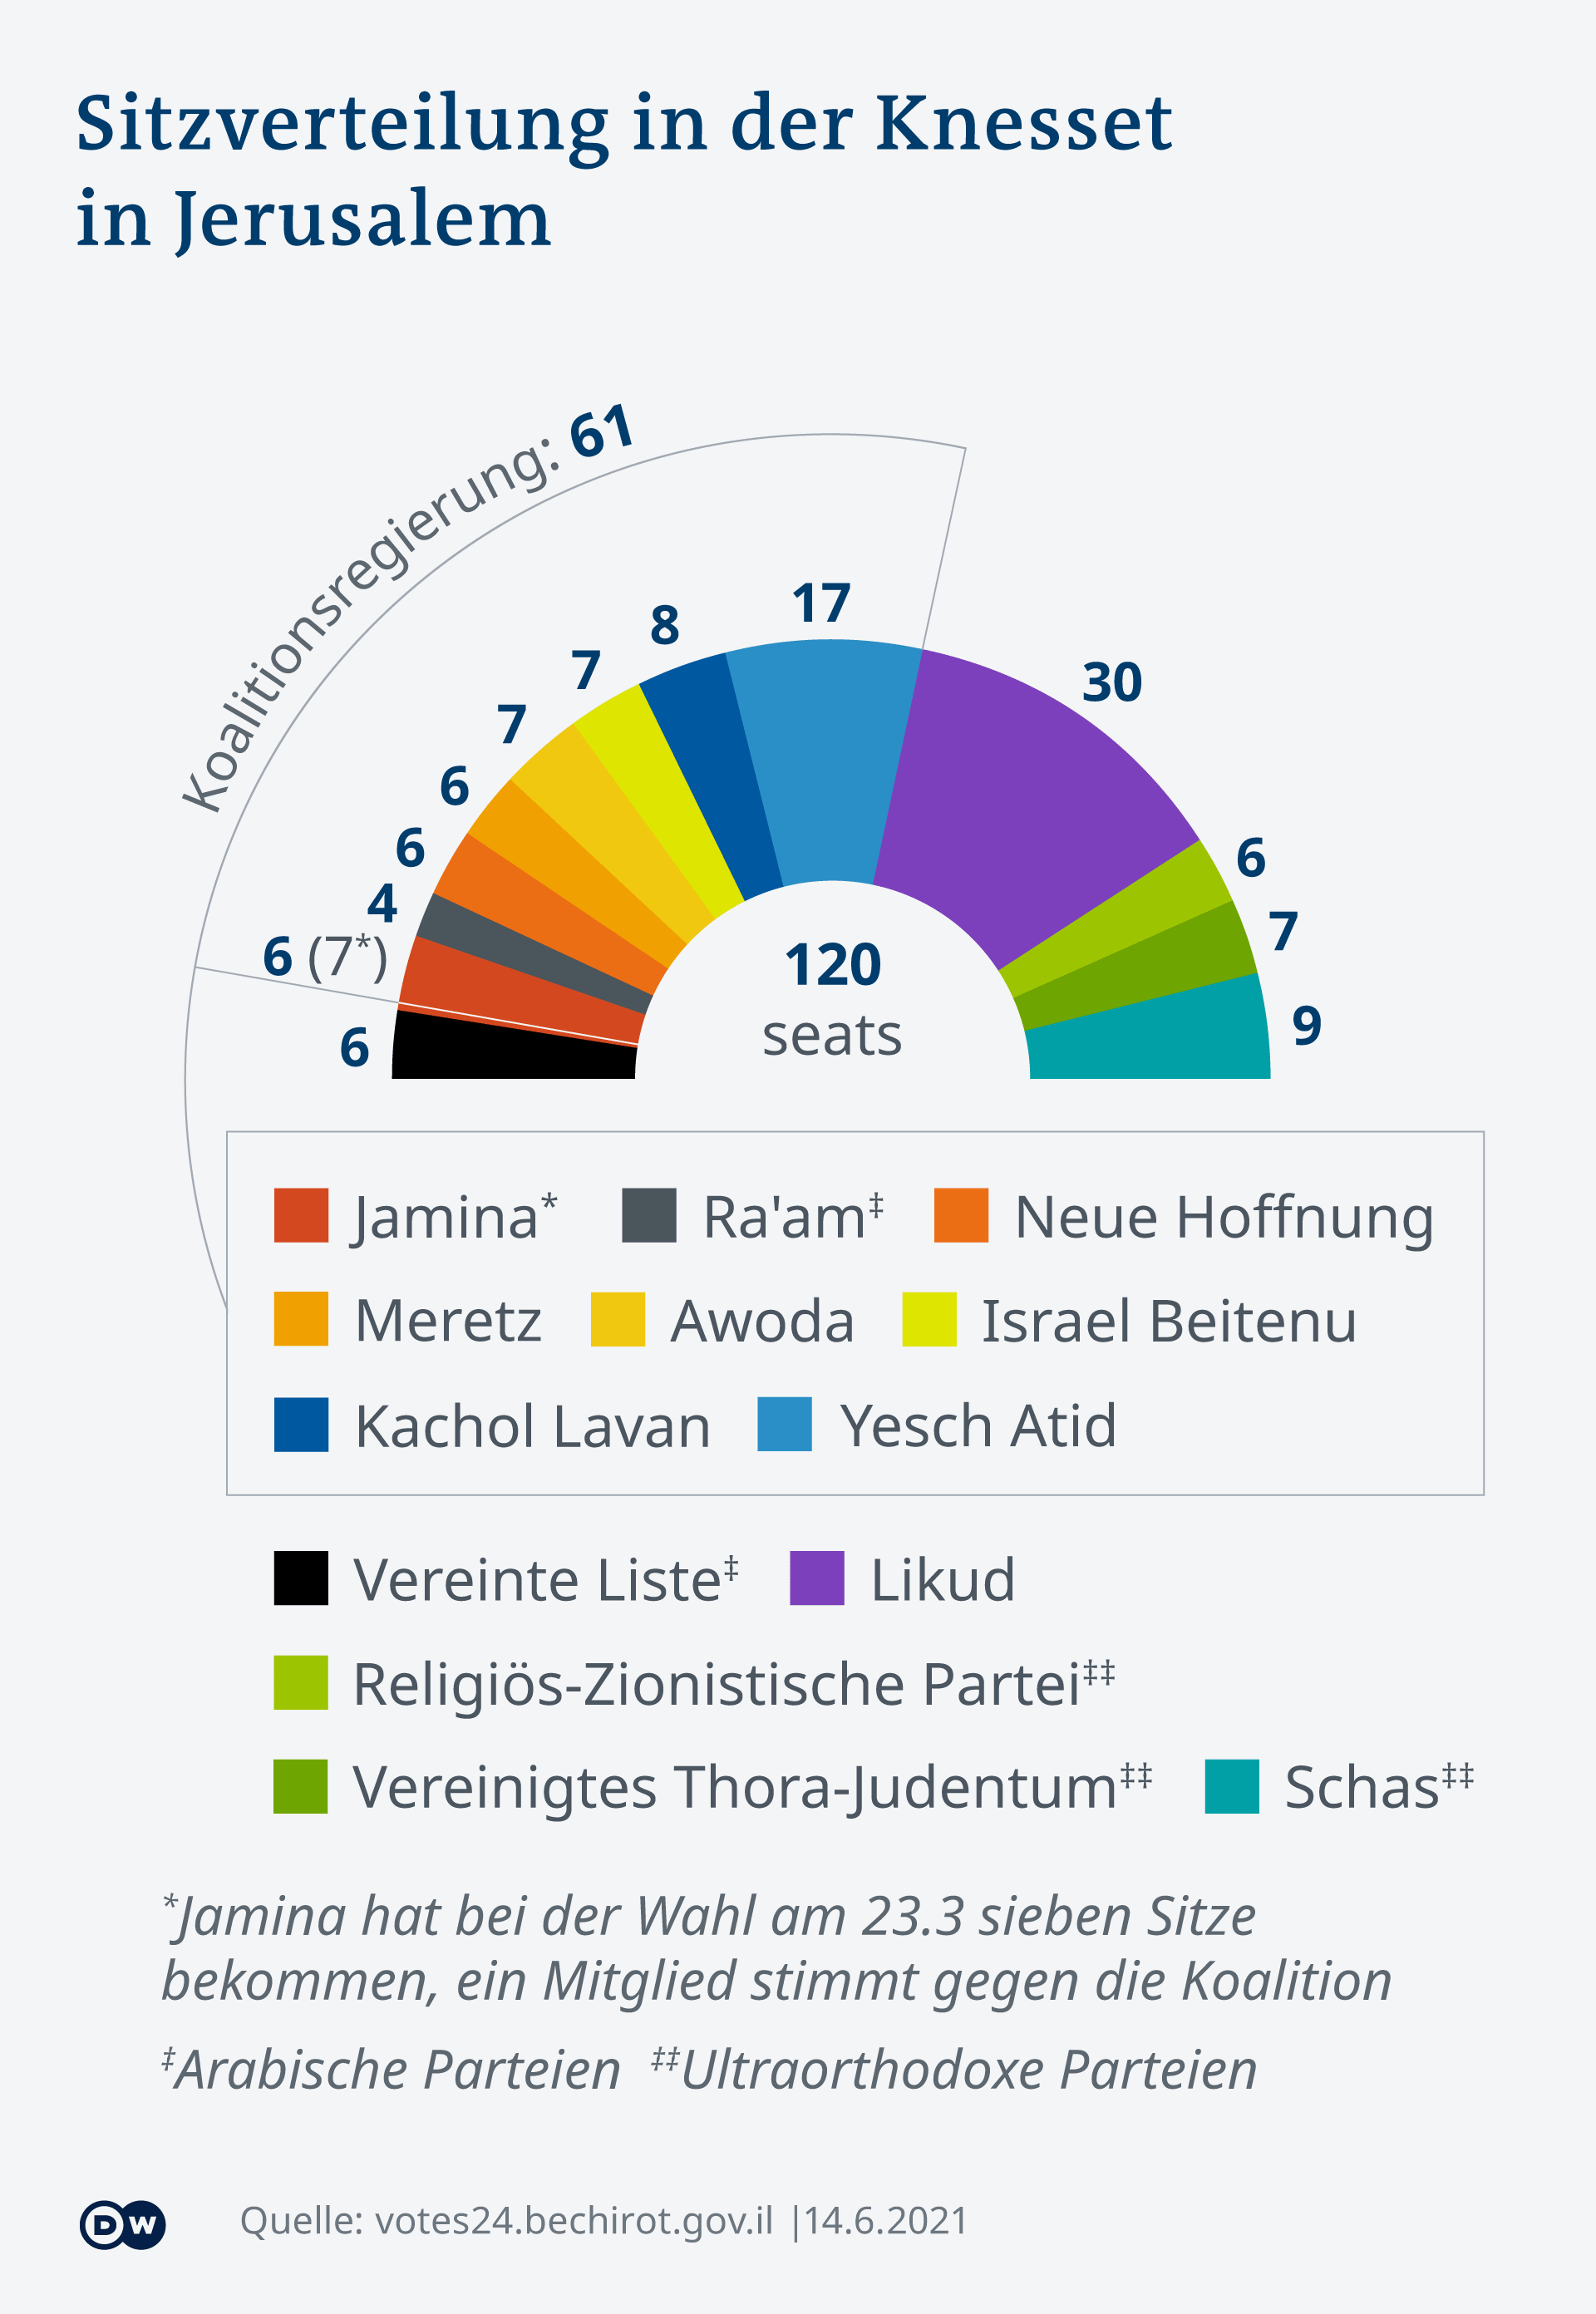 التشكيل الوزاري في إسرائيل  - الحكومة الائتلافية 2021 في إسرائيل. Infografik; Koalitionsregierung Israel 2021. (Foto: DW)